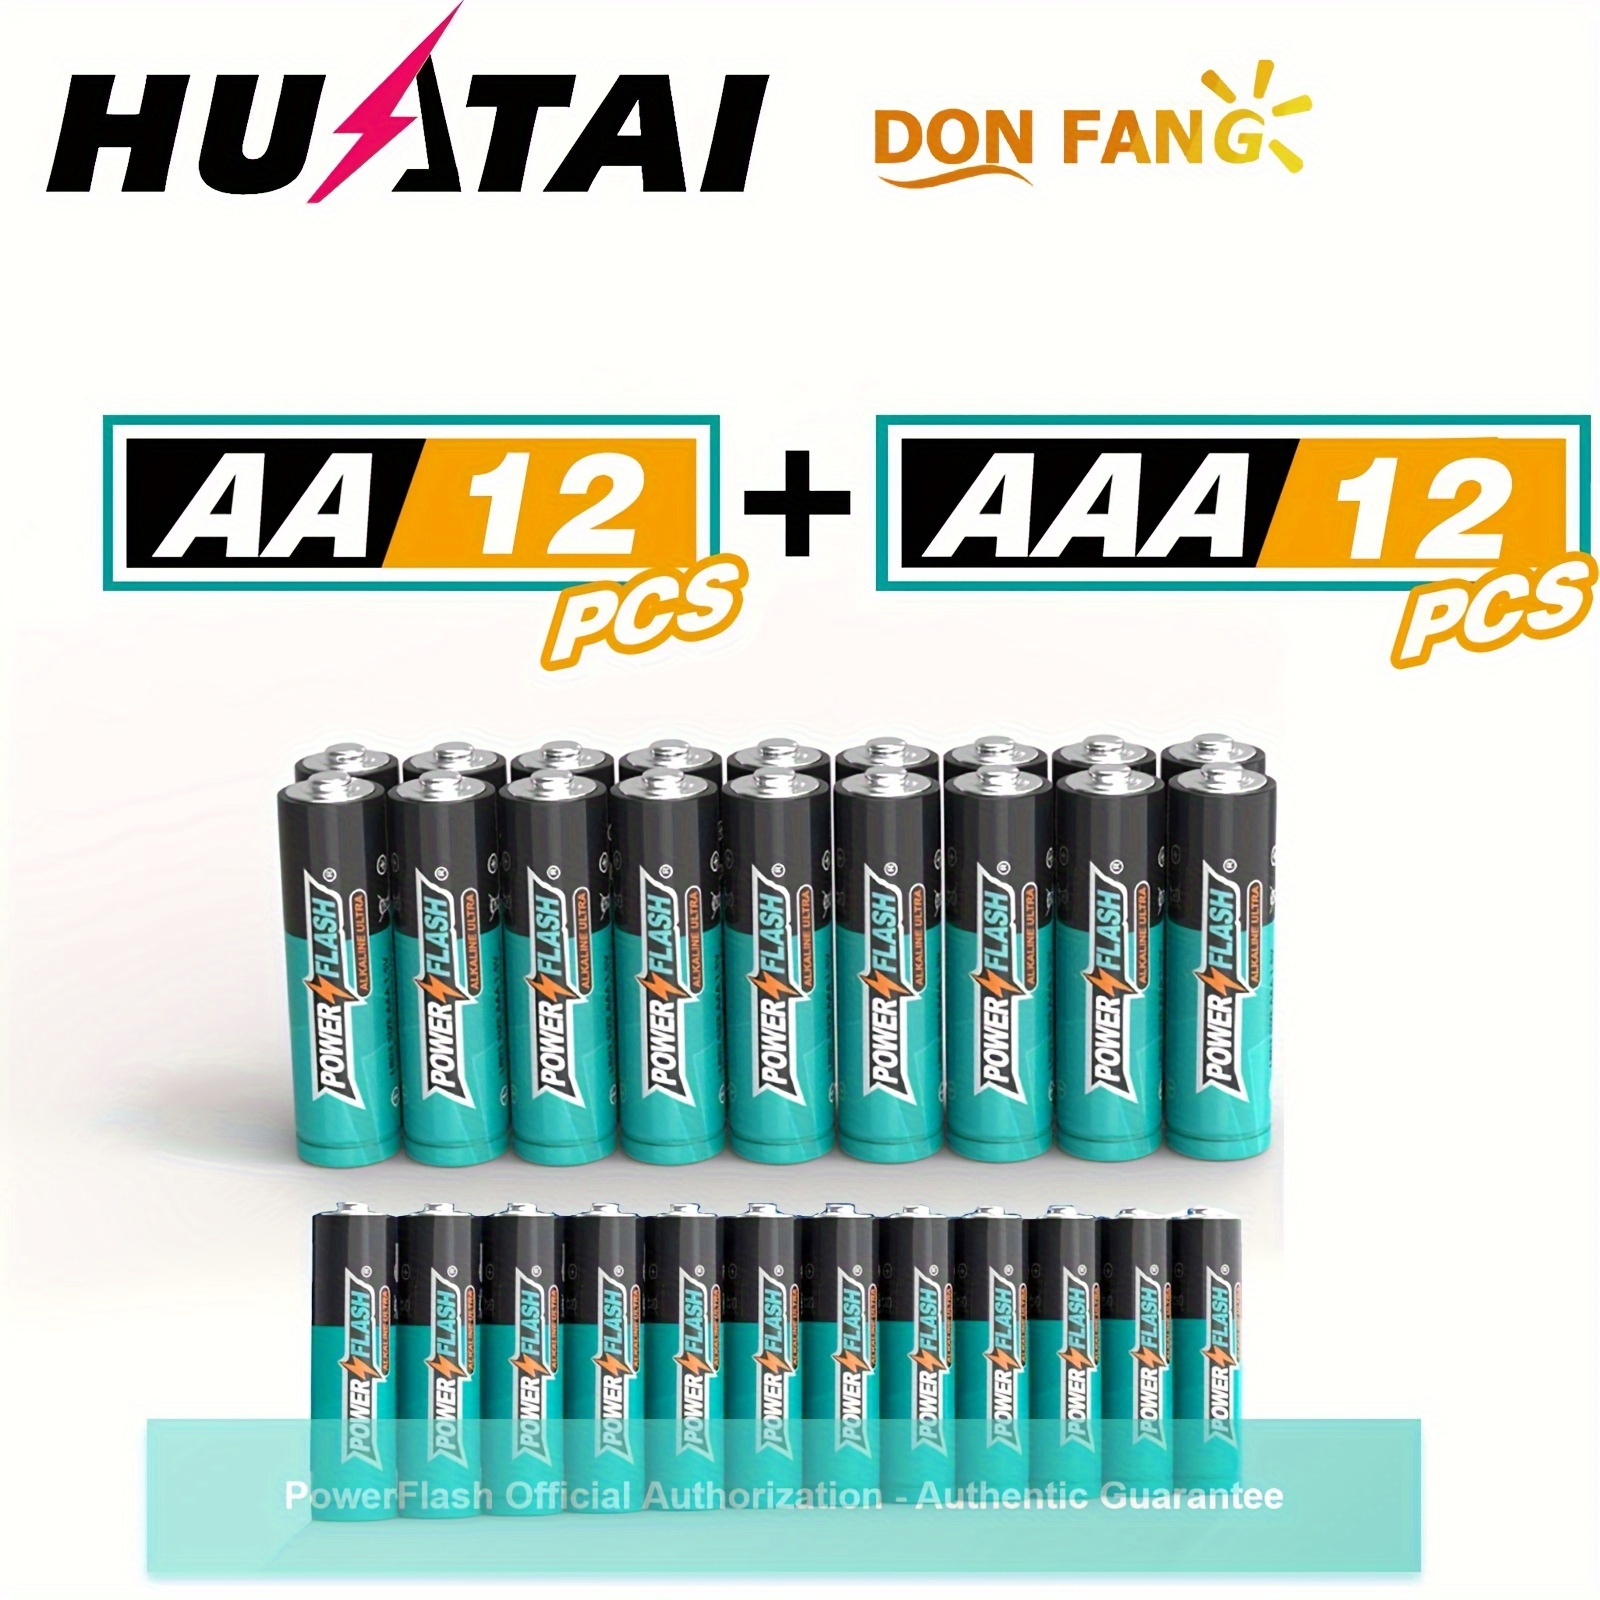 PowerFlash Alkaline Long-Lasting Batteries